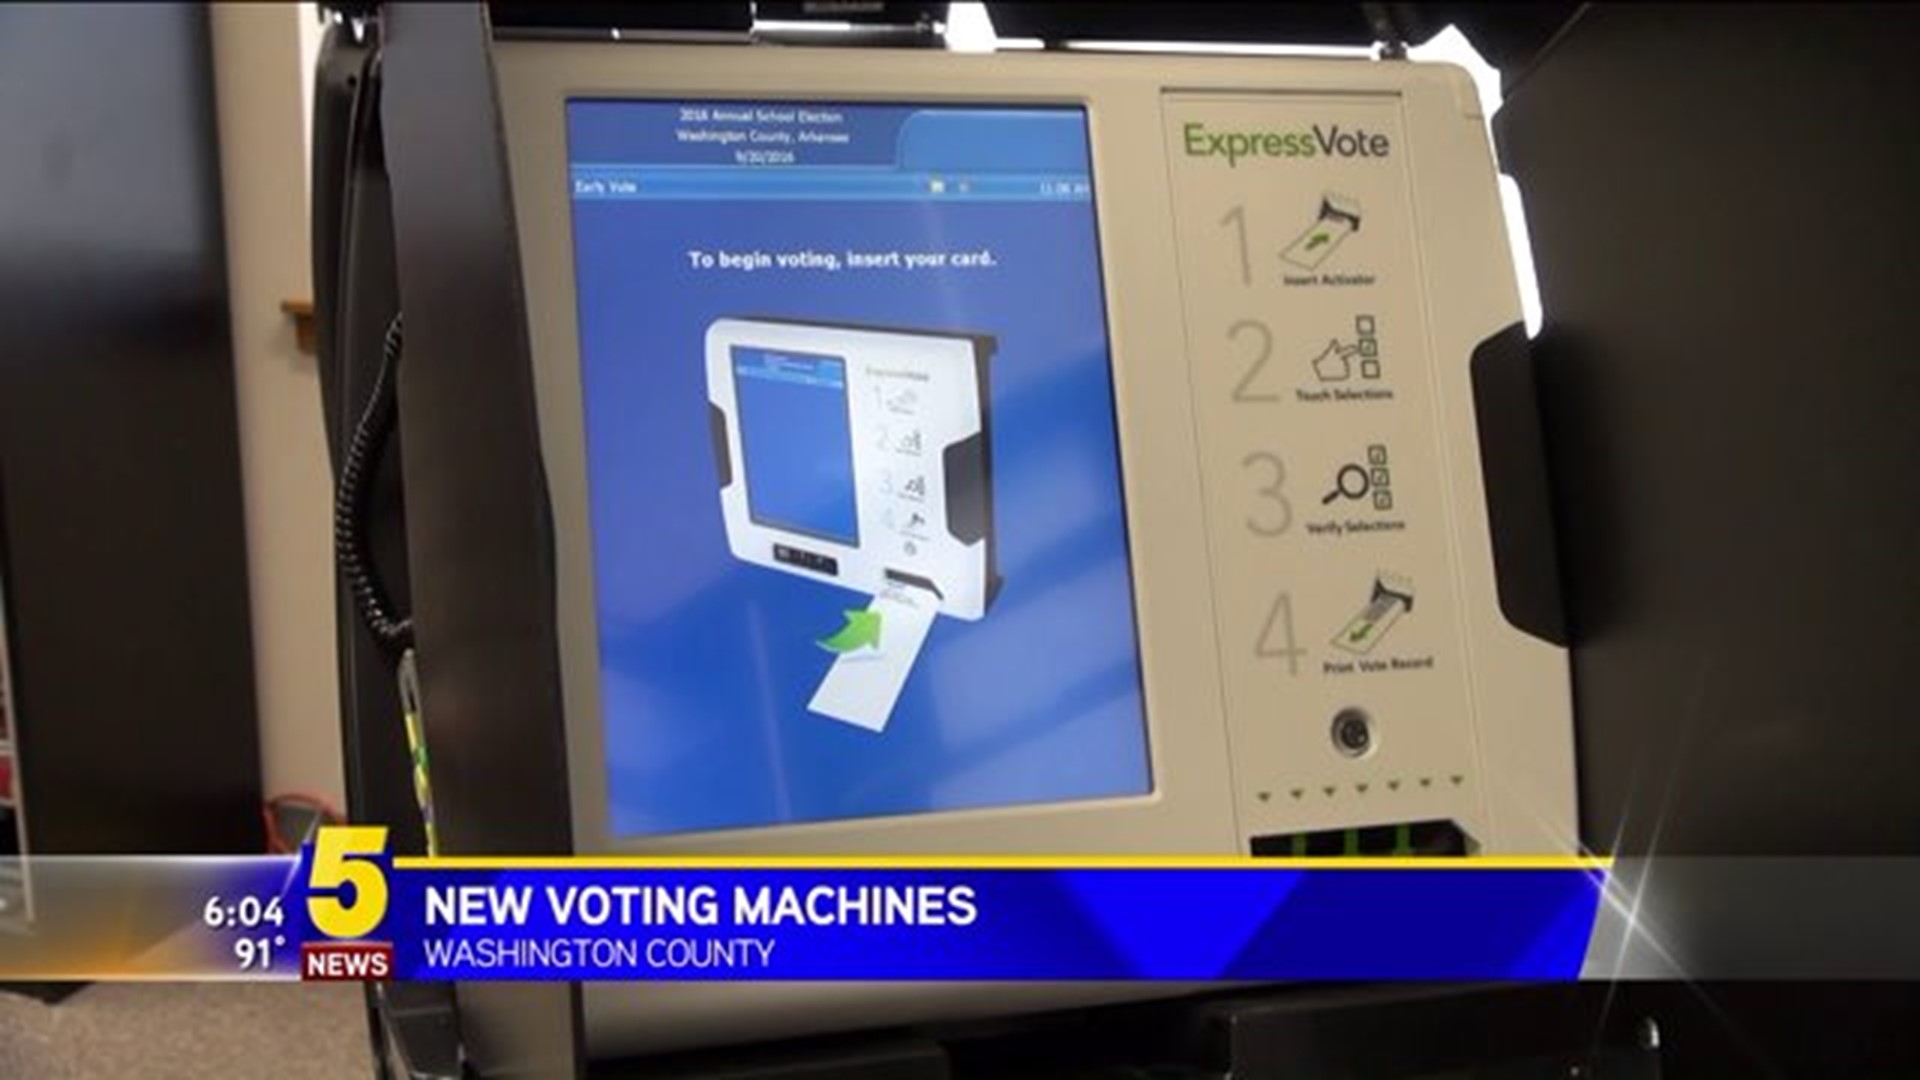 NEW VOTING MACHINES